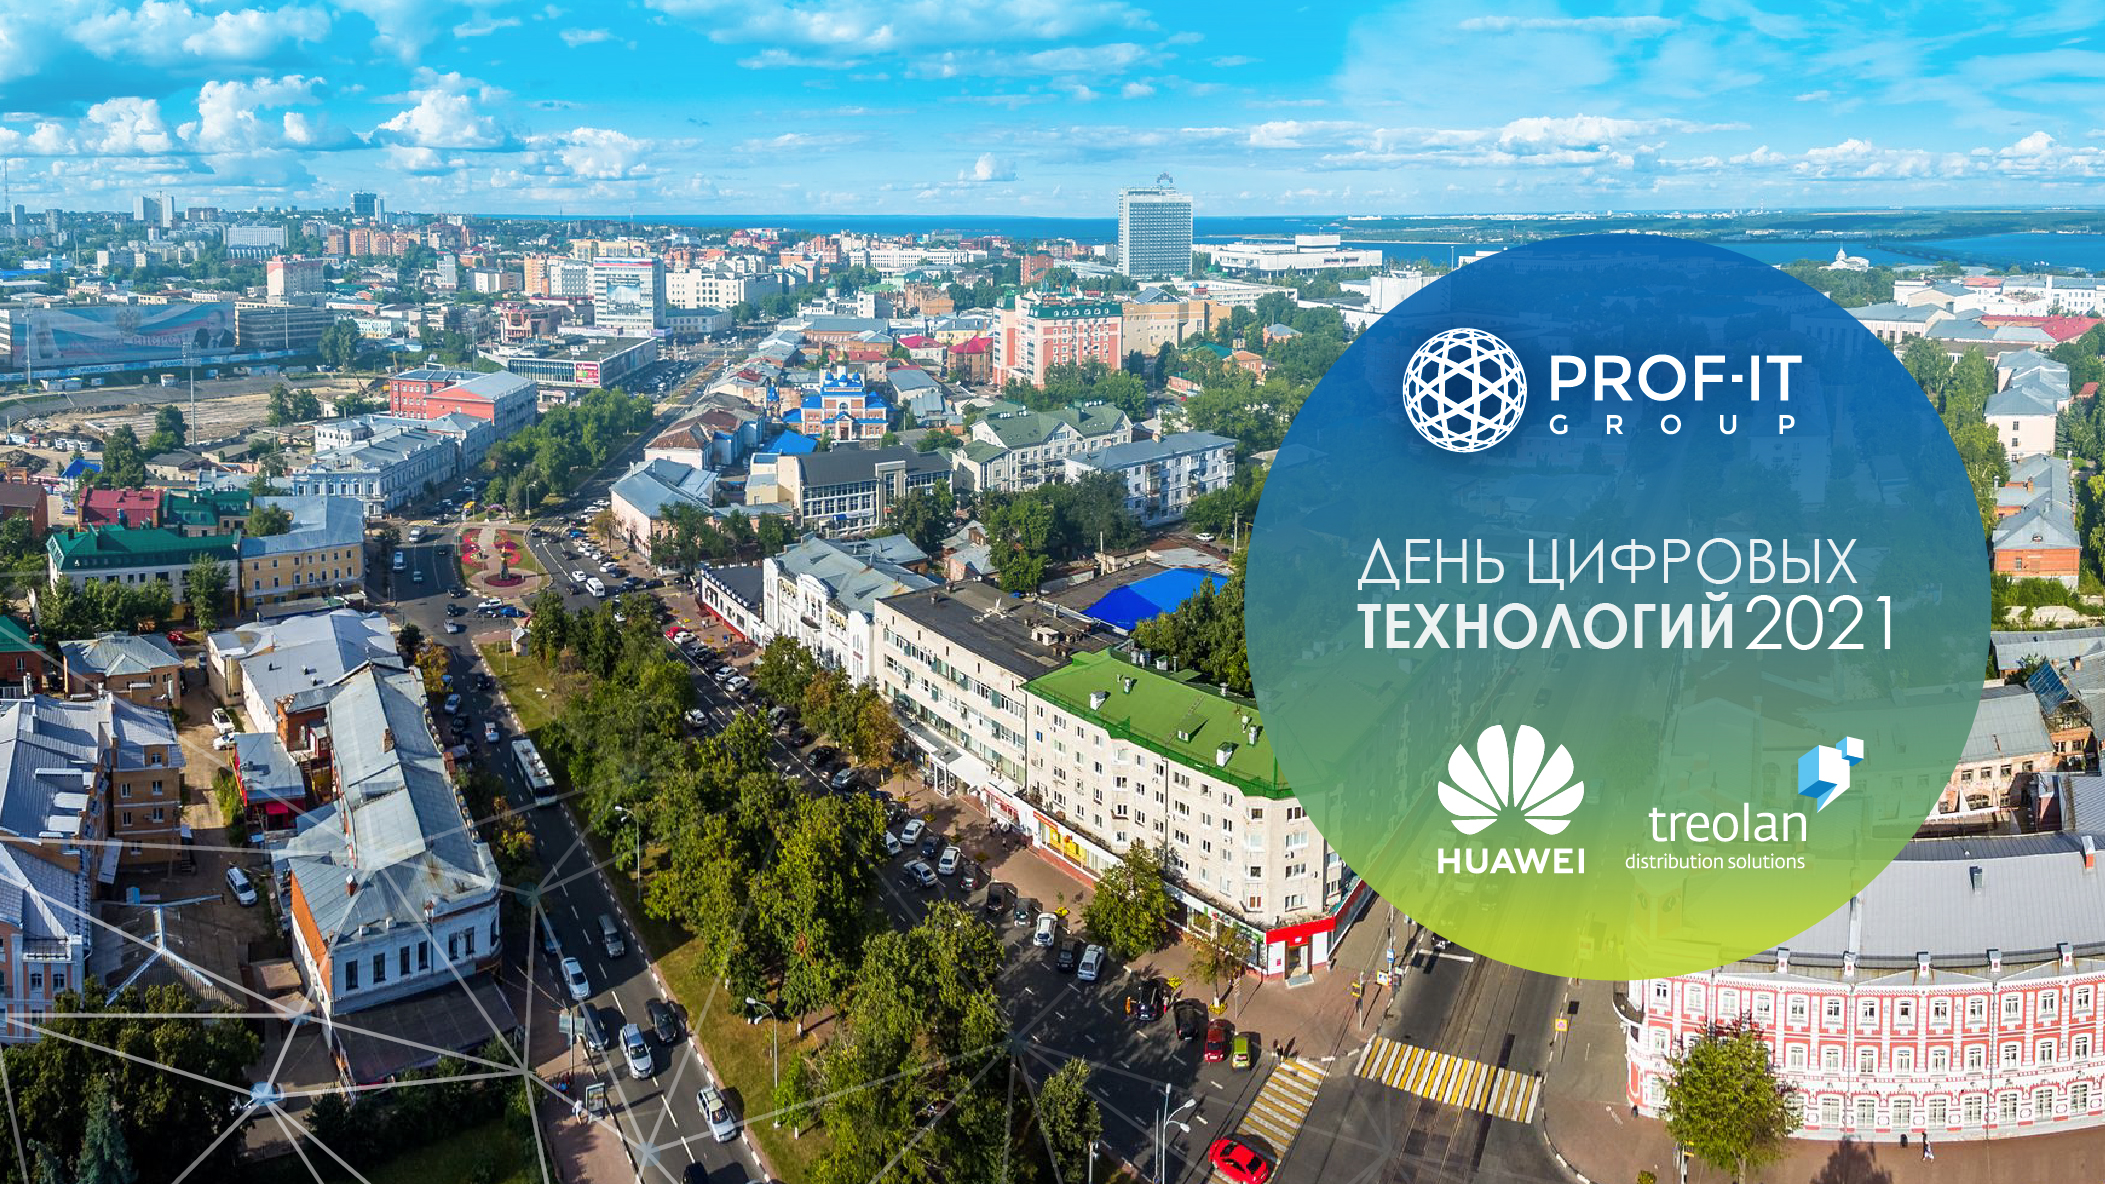 PROF-IT GROUP организует день цифровых технологий в Ульяновске